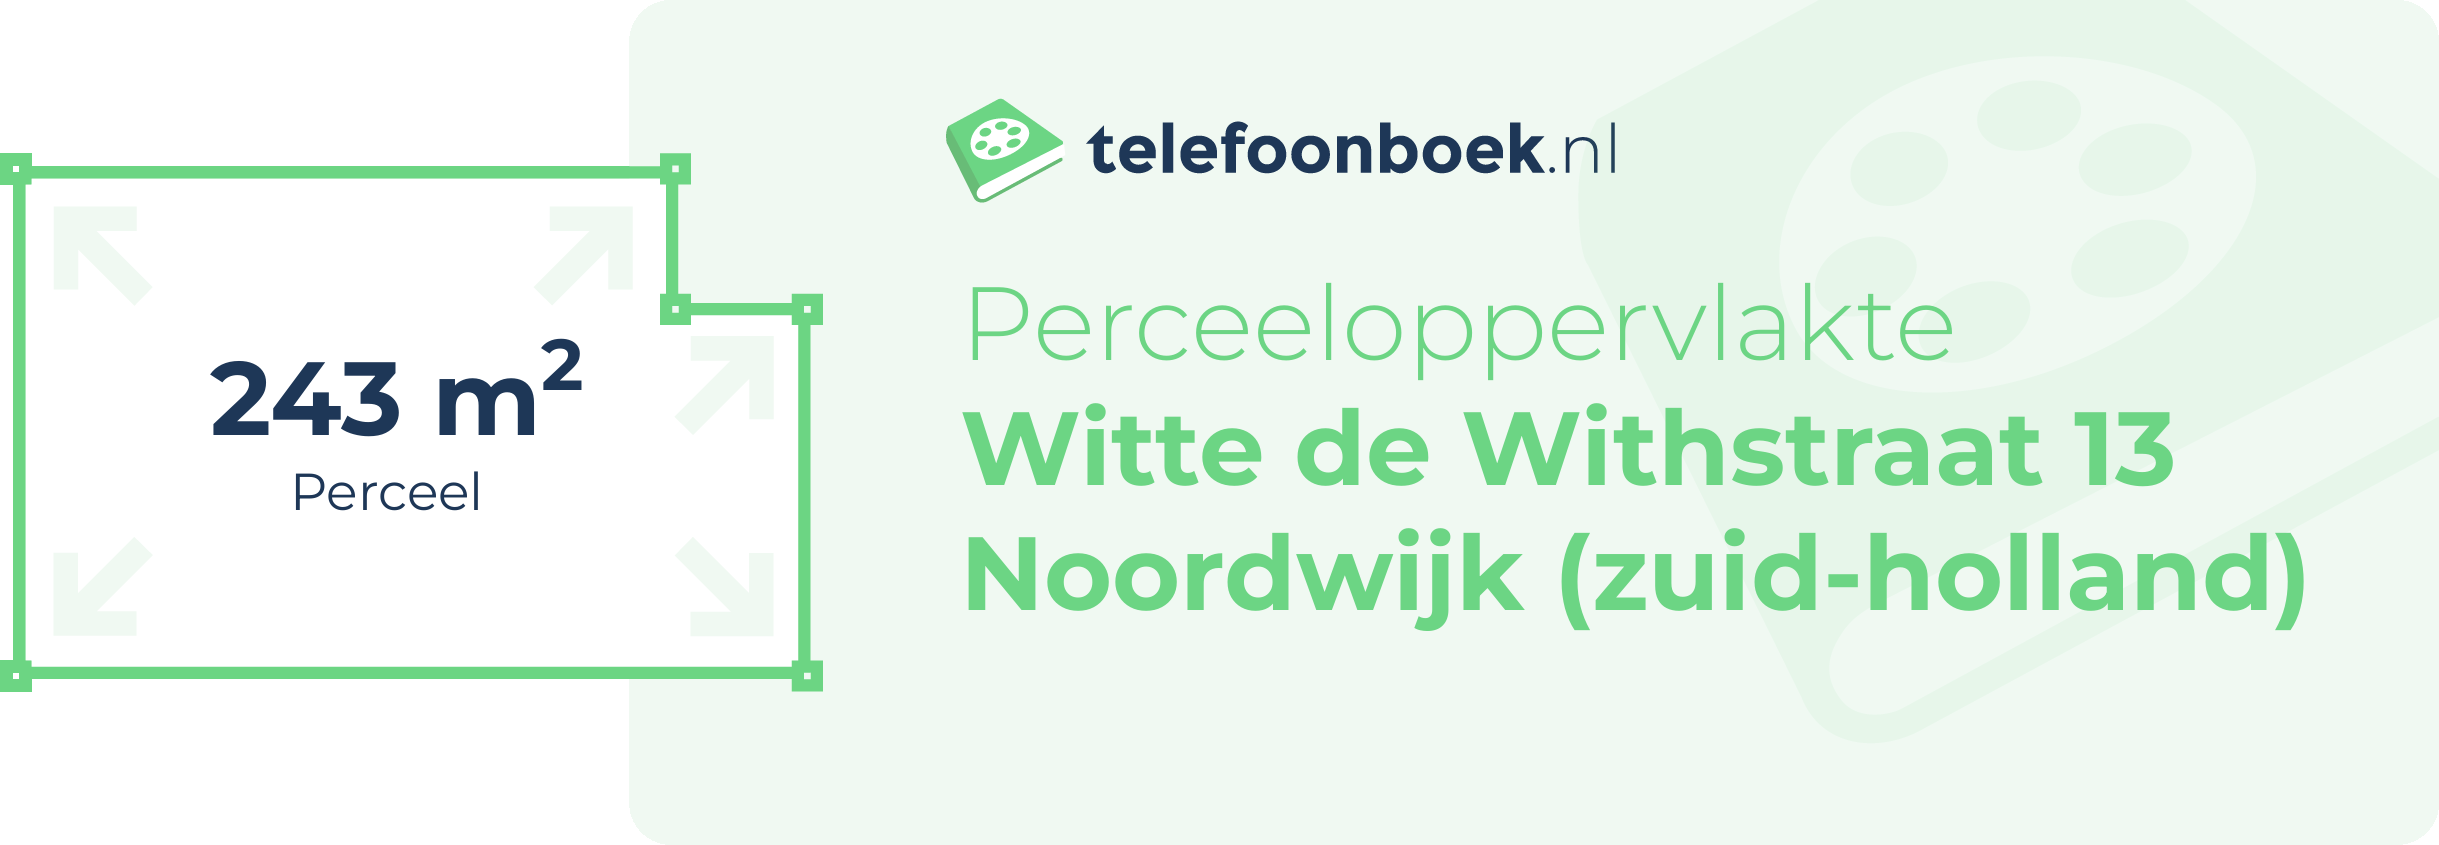 Perceeloppervlakte Witte De Withstraat 13 Noordwijk (Zuid-Holland)